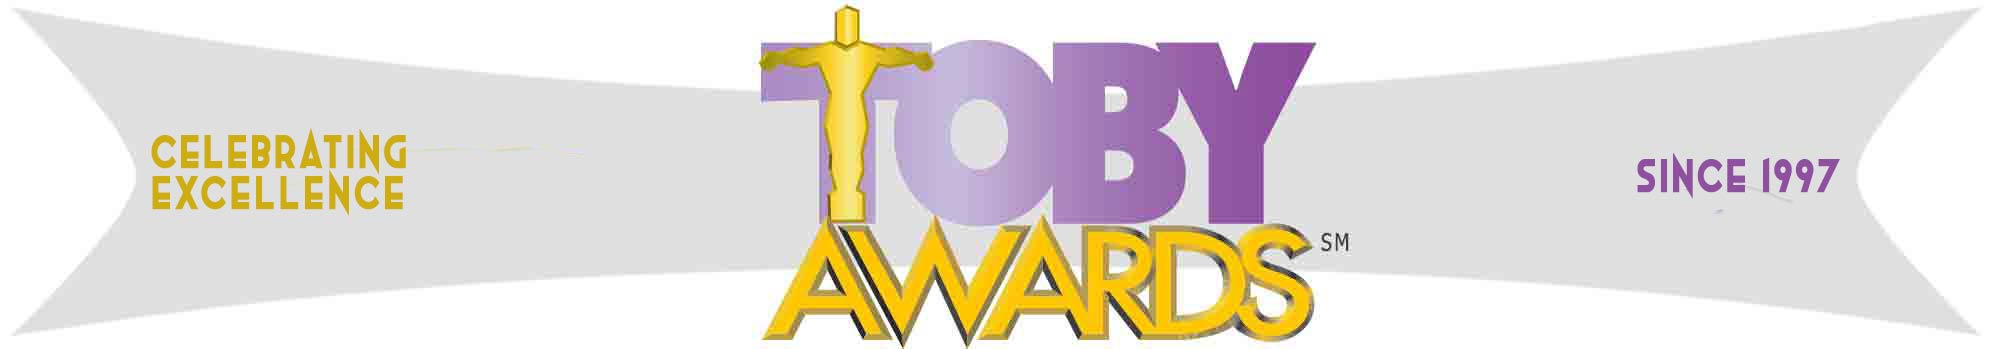 Toby Awards